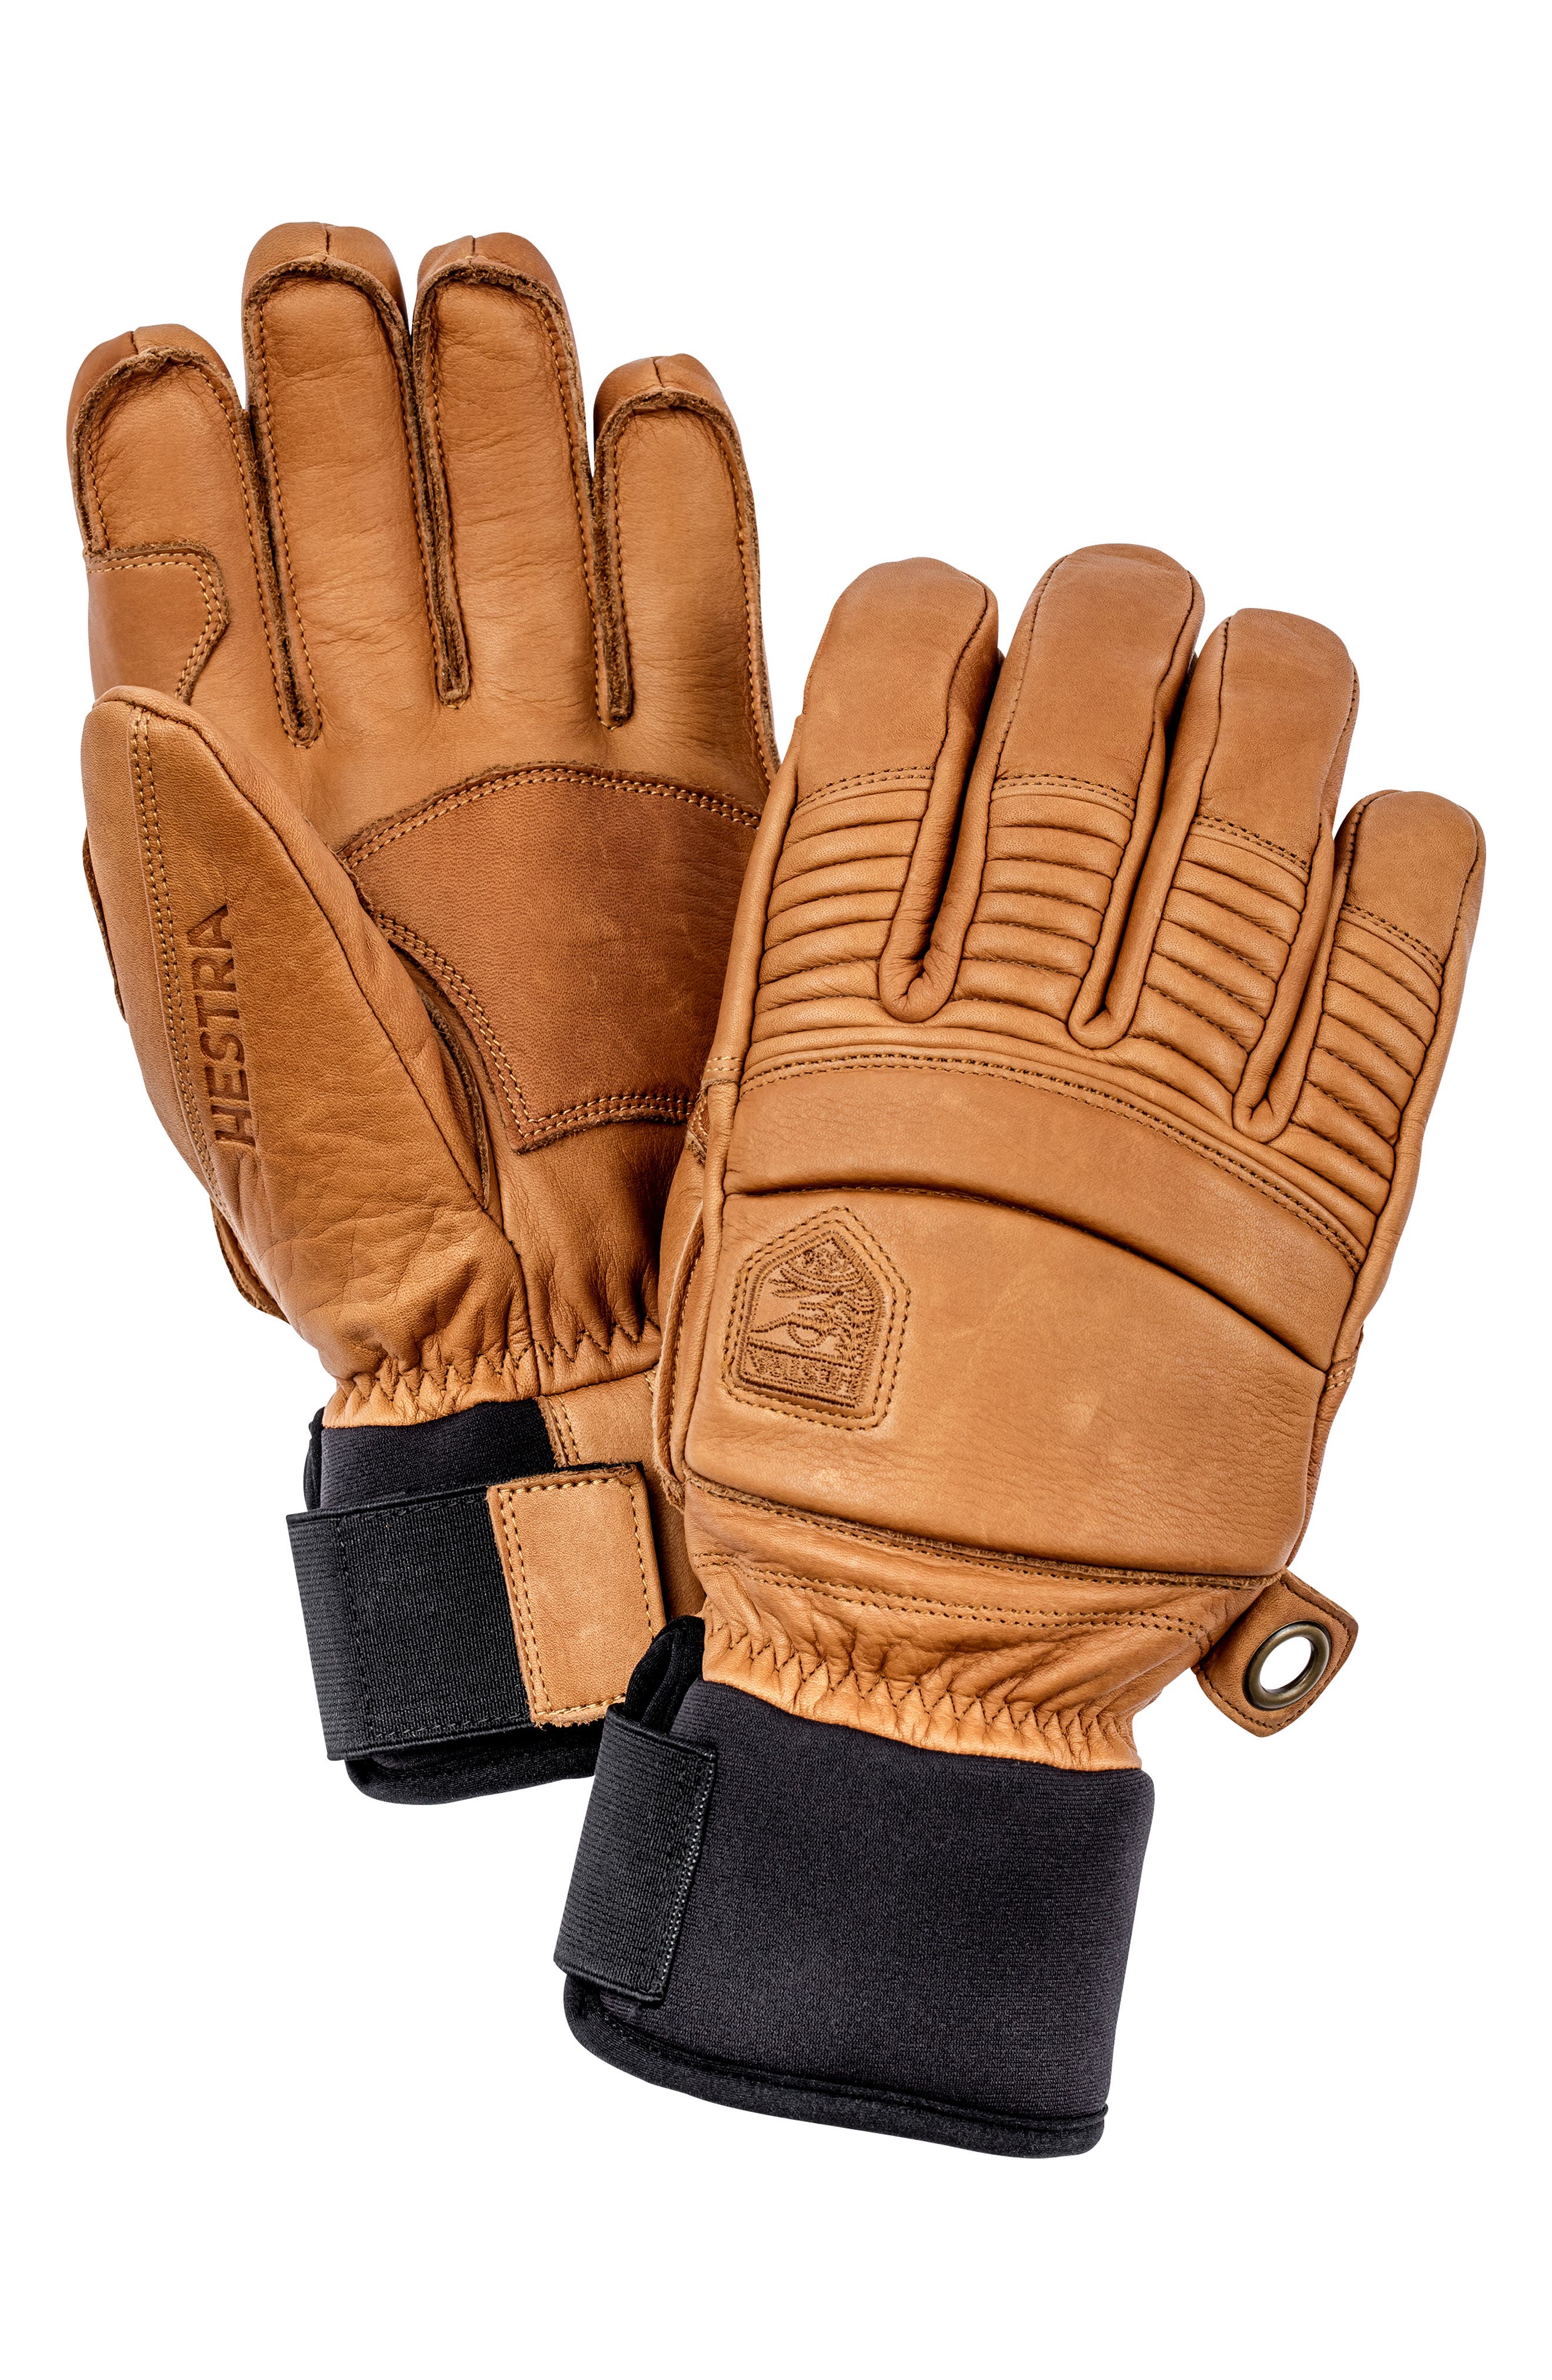 orange ski gloves